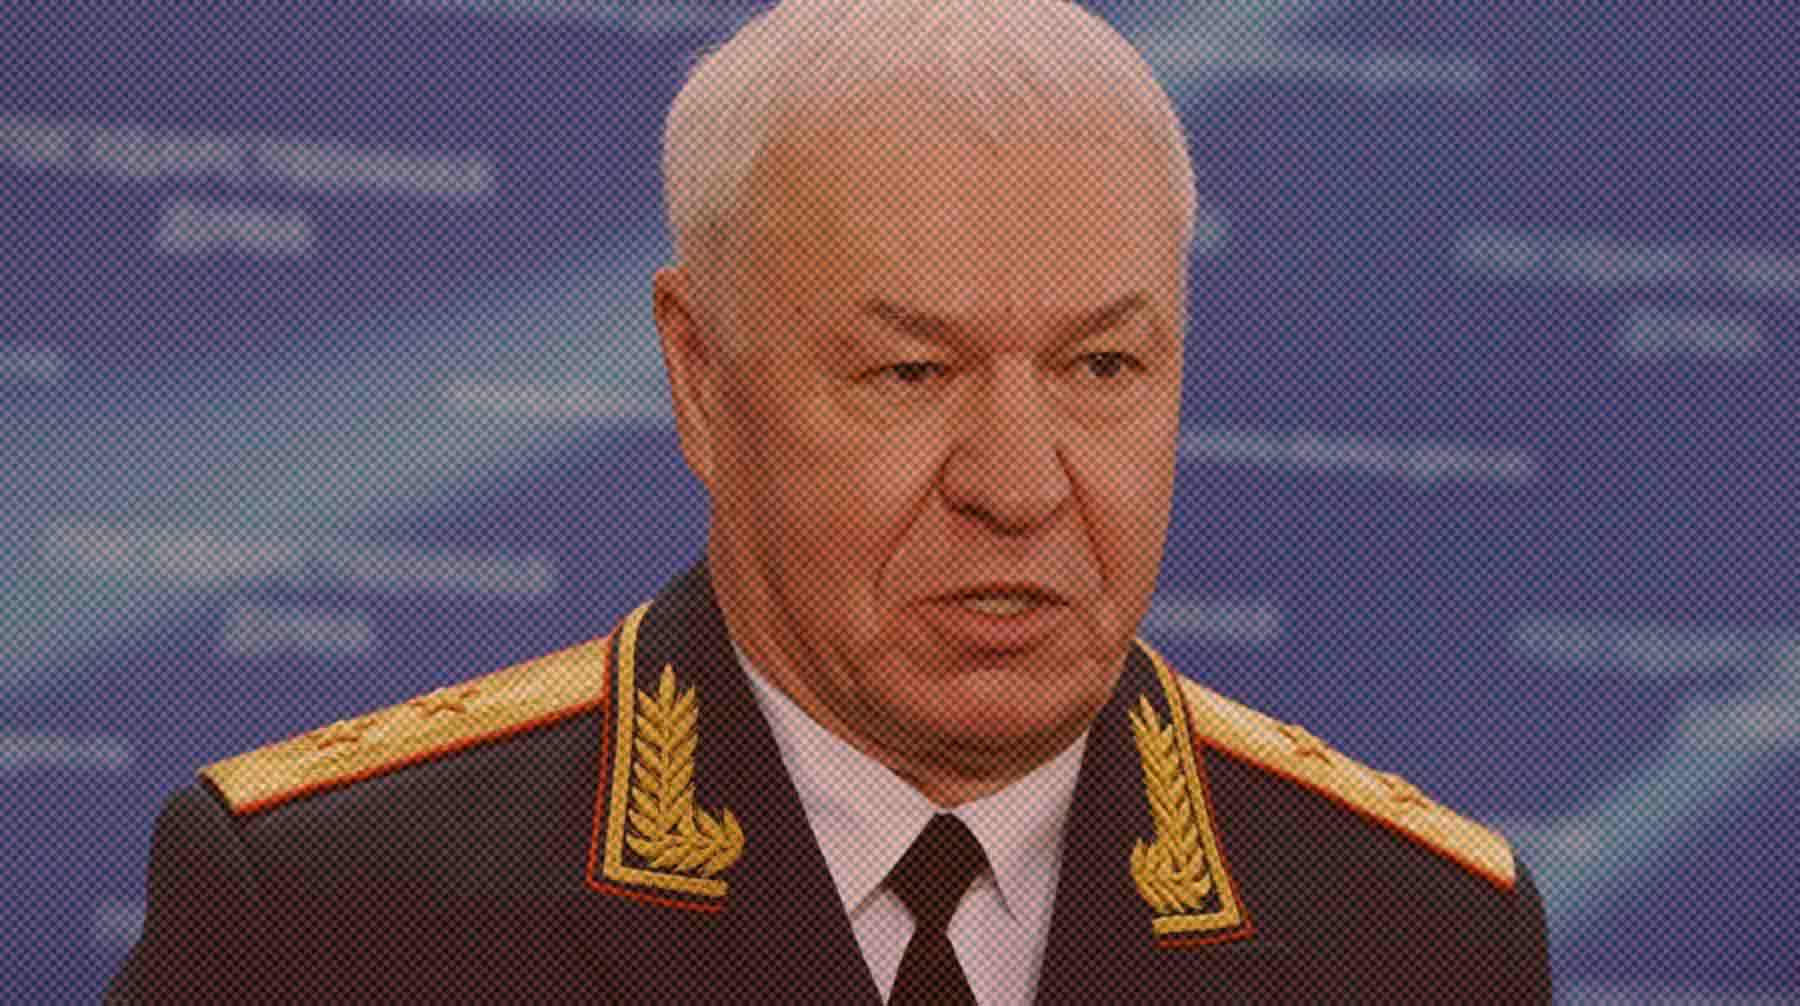 Бойцы частной военной компании сбили самолет Ил-22 и вертолет Ка-52, были убиты 12 военнослужащих ВКС России Генерал-лейтенант Виктор Соболев